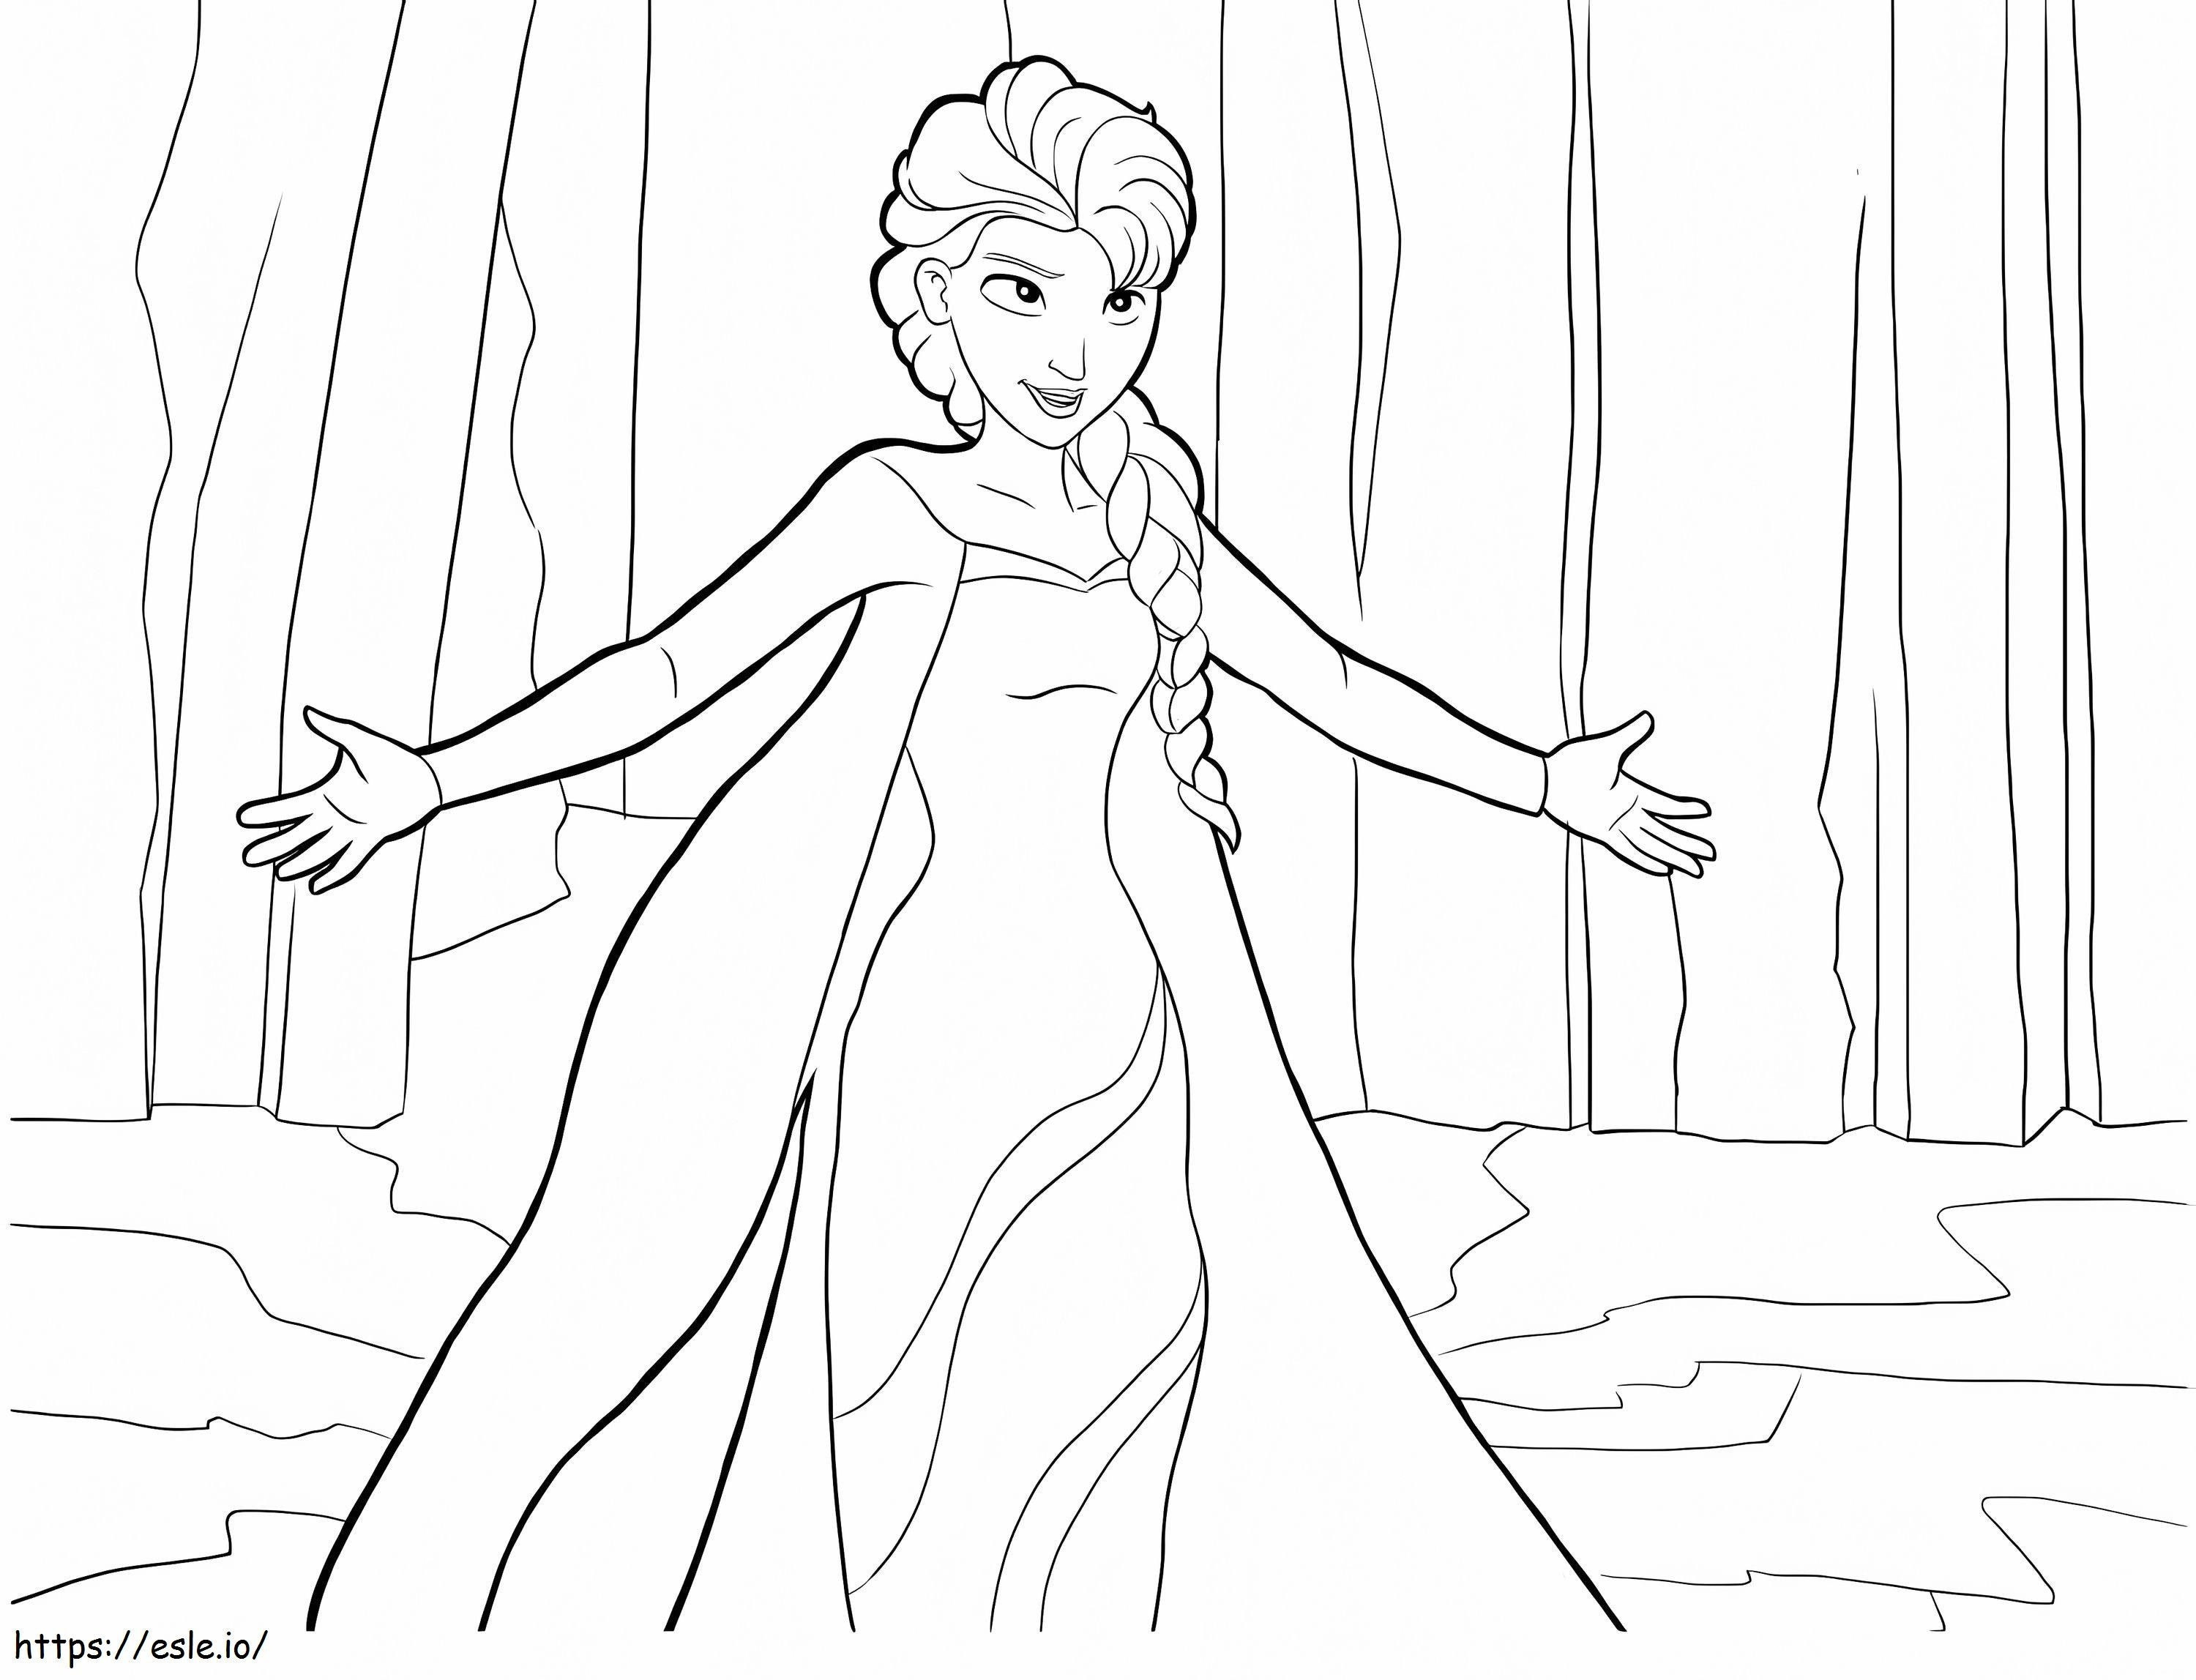 Elsa zingt kleurplaat kleurplaat